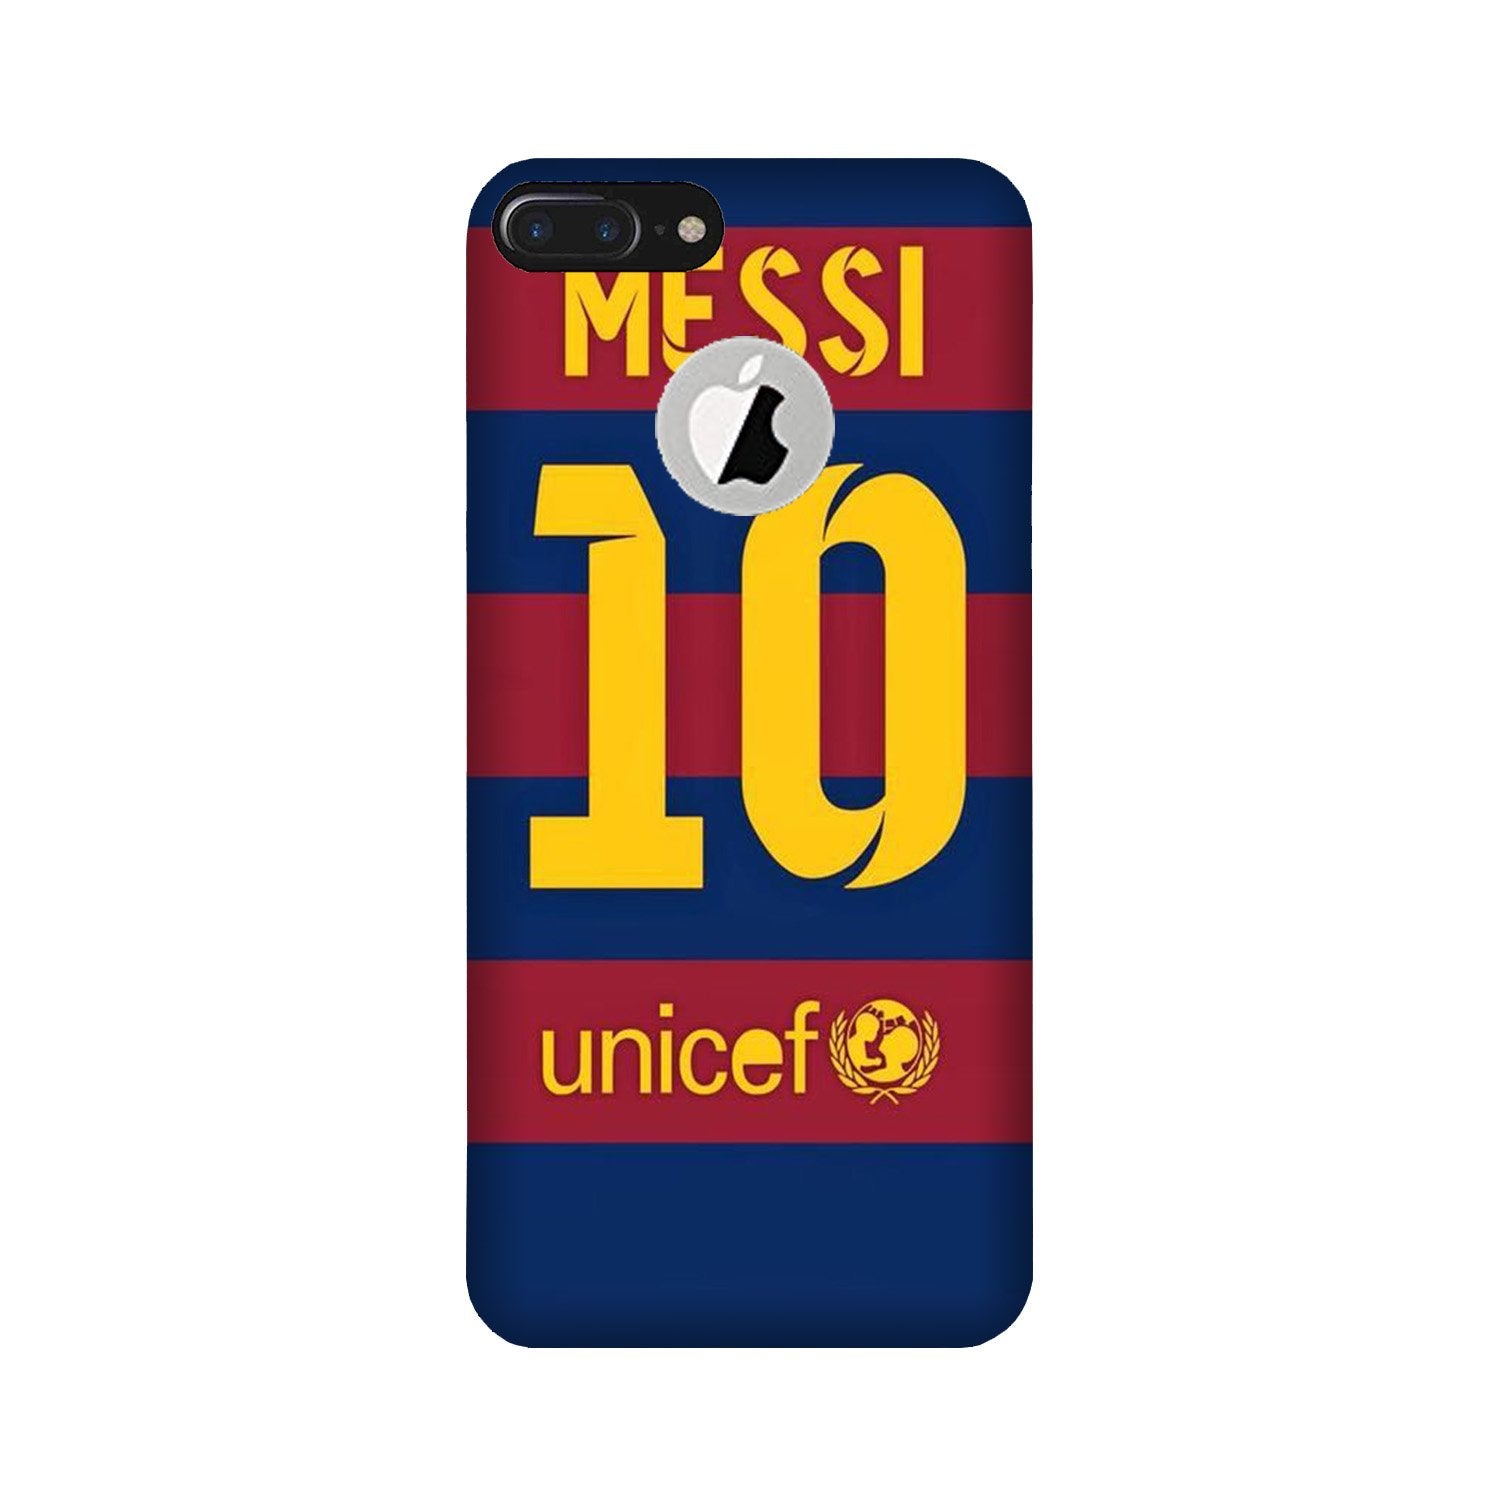 Messi Case for iPhone 7 Plus logo cut(Design - 172)